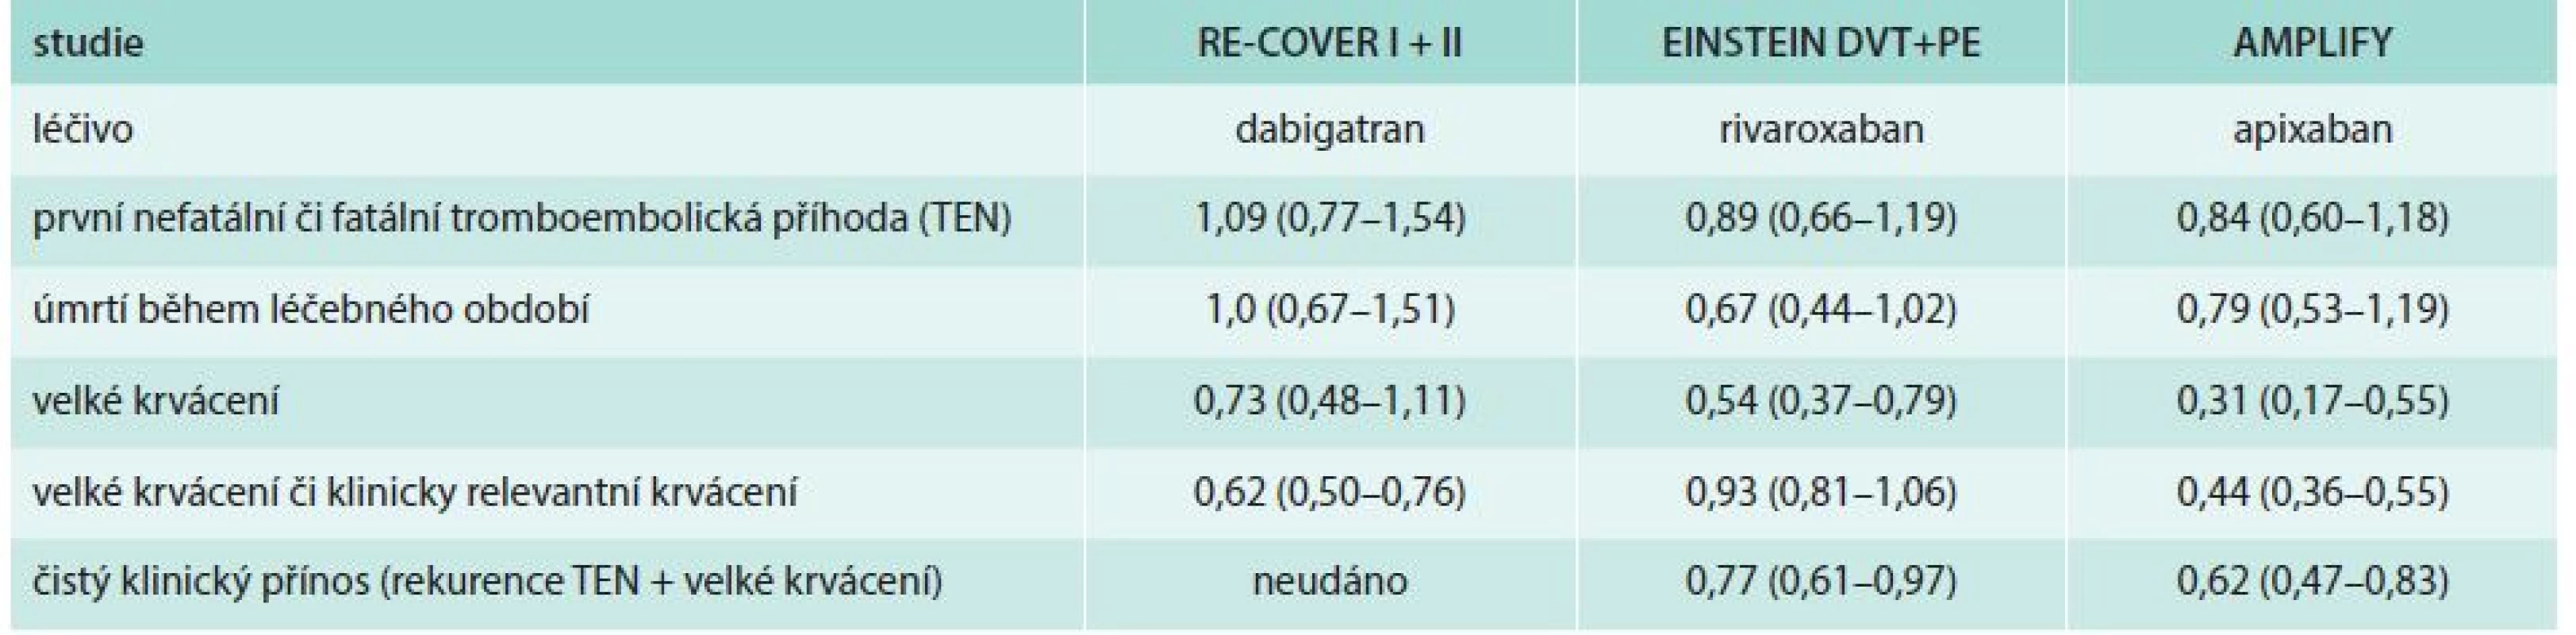 Ukazatele účinnosti a bezpečnosti jednotlivých NOAC v indikaci léčby TEN/redukce rizika RR (95% CI)